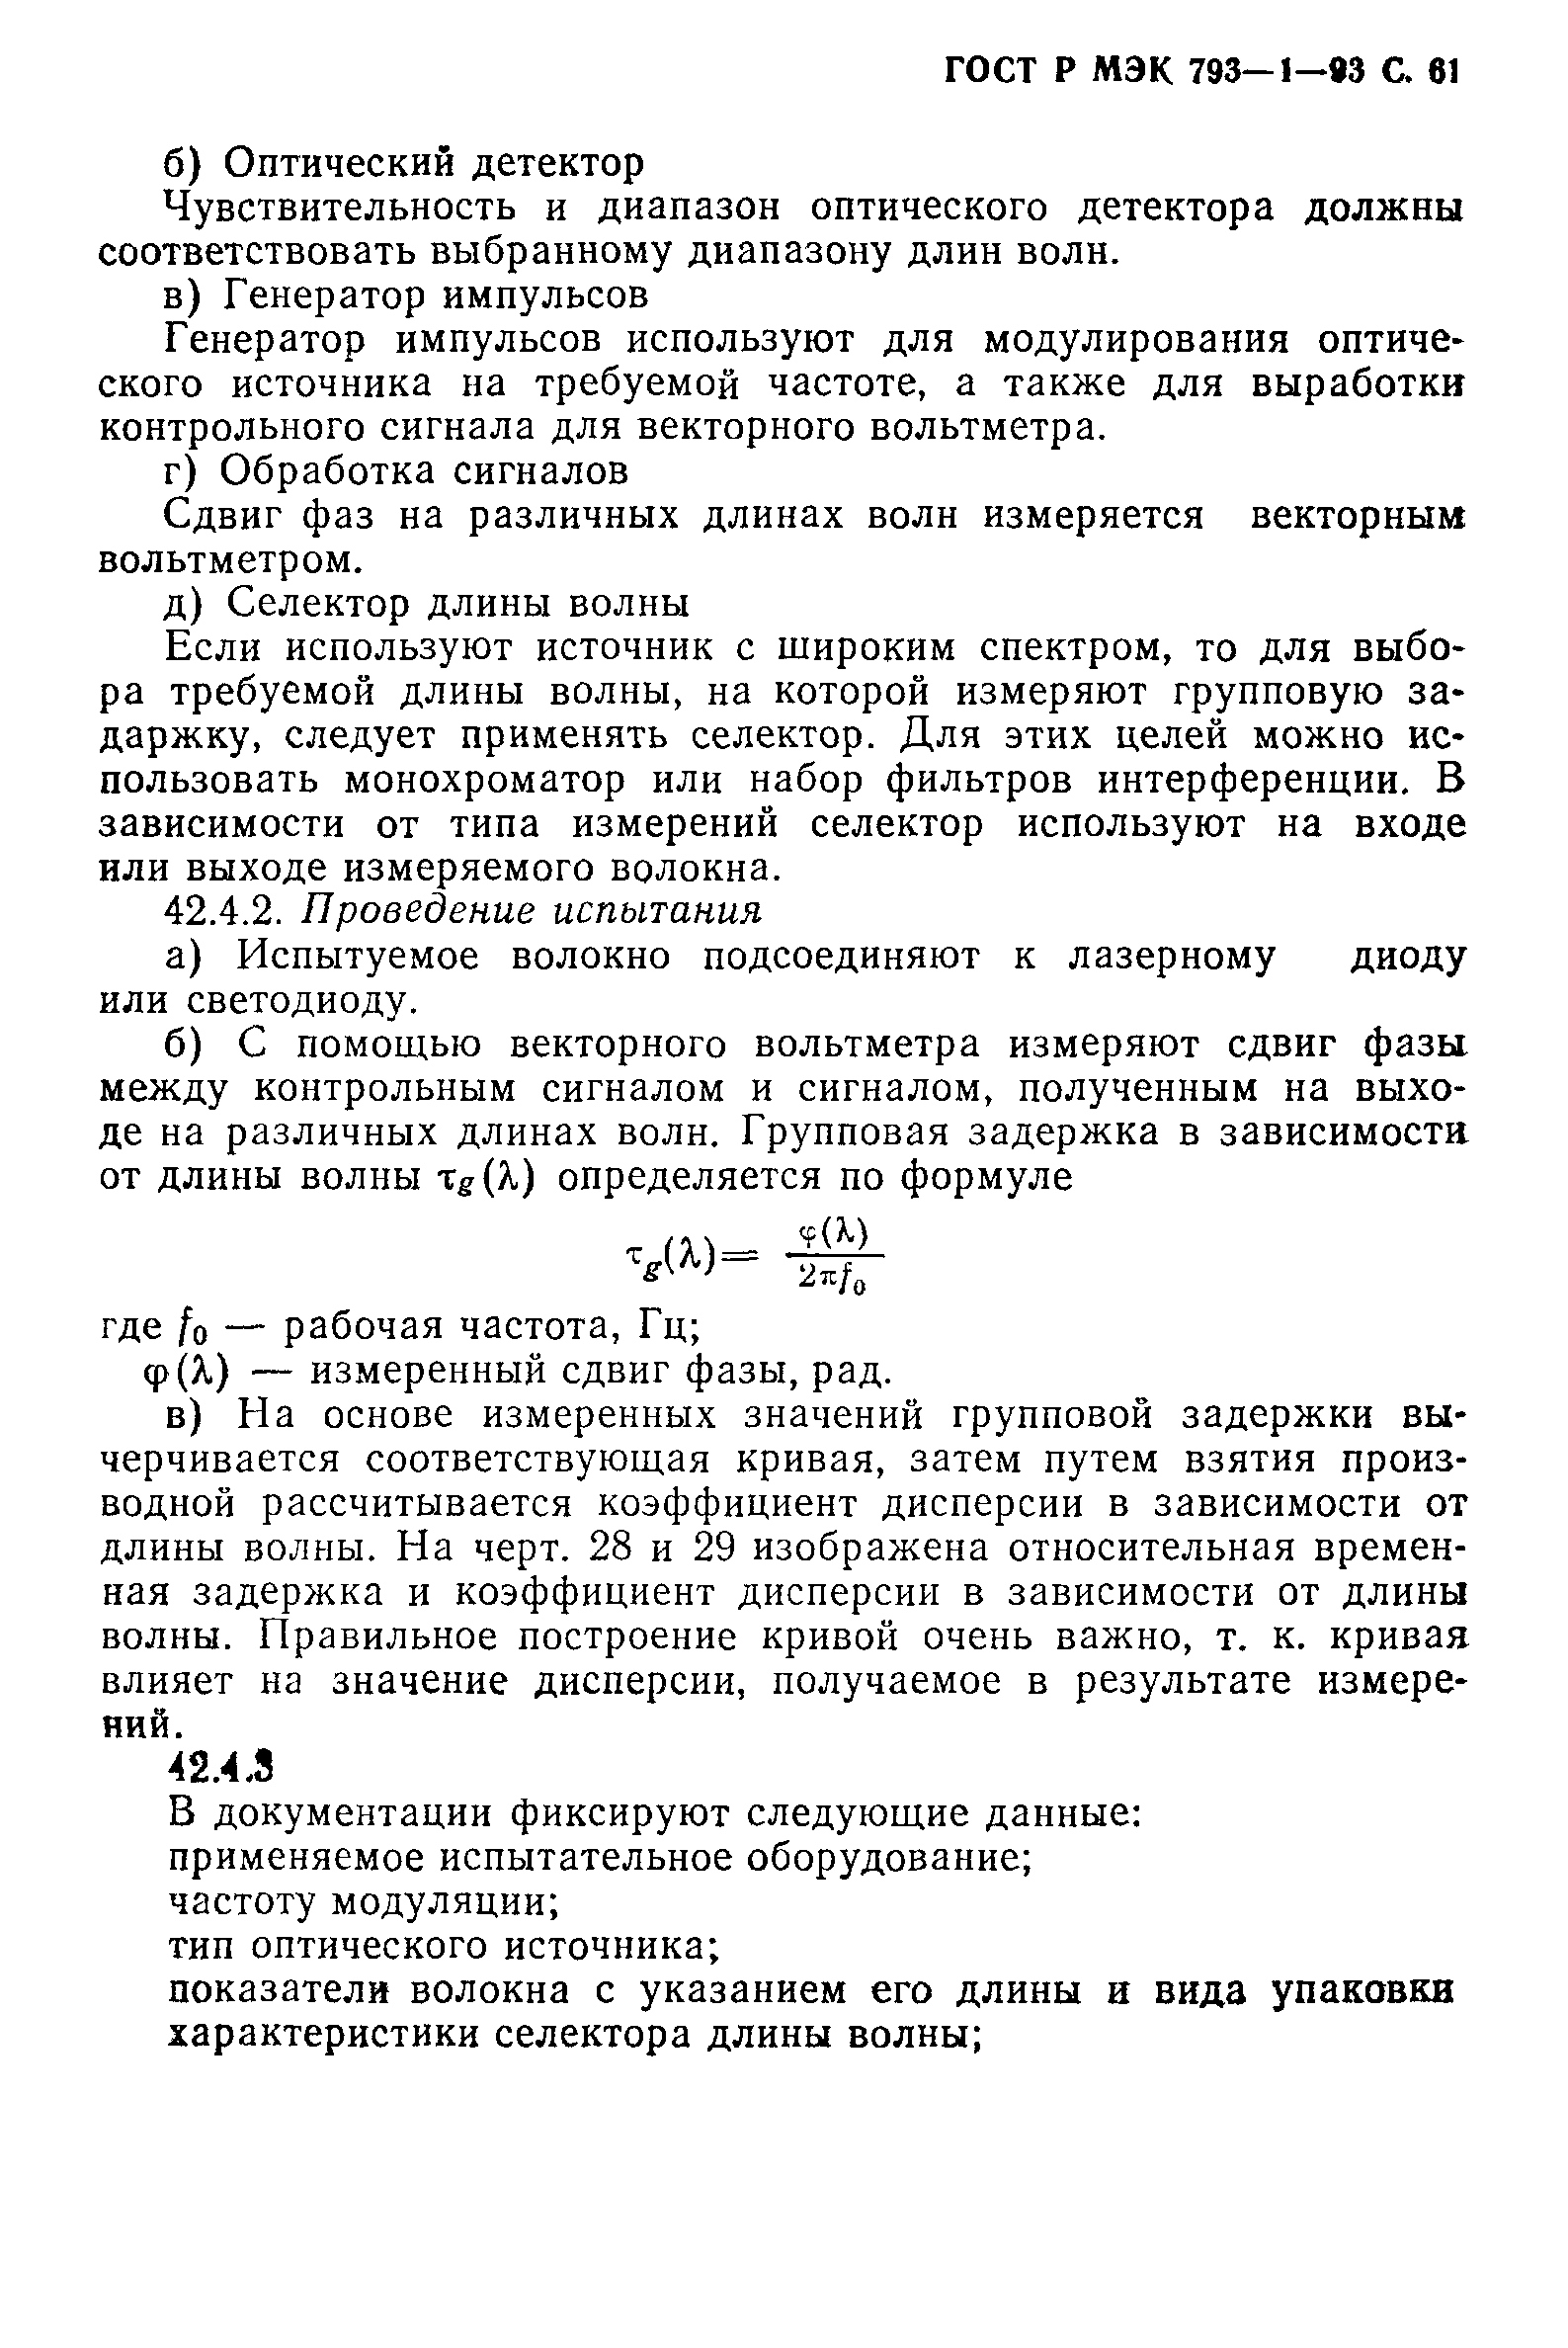 ГОСТ Р МЭК 793-1-93